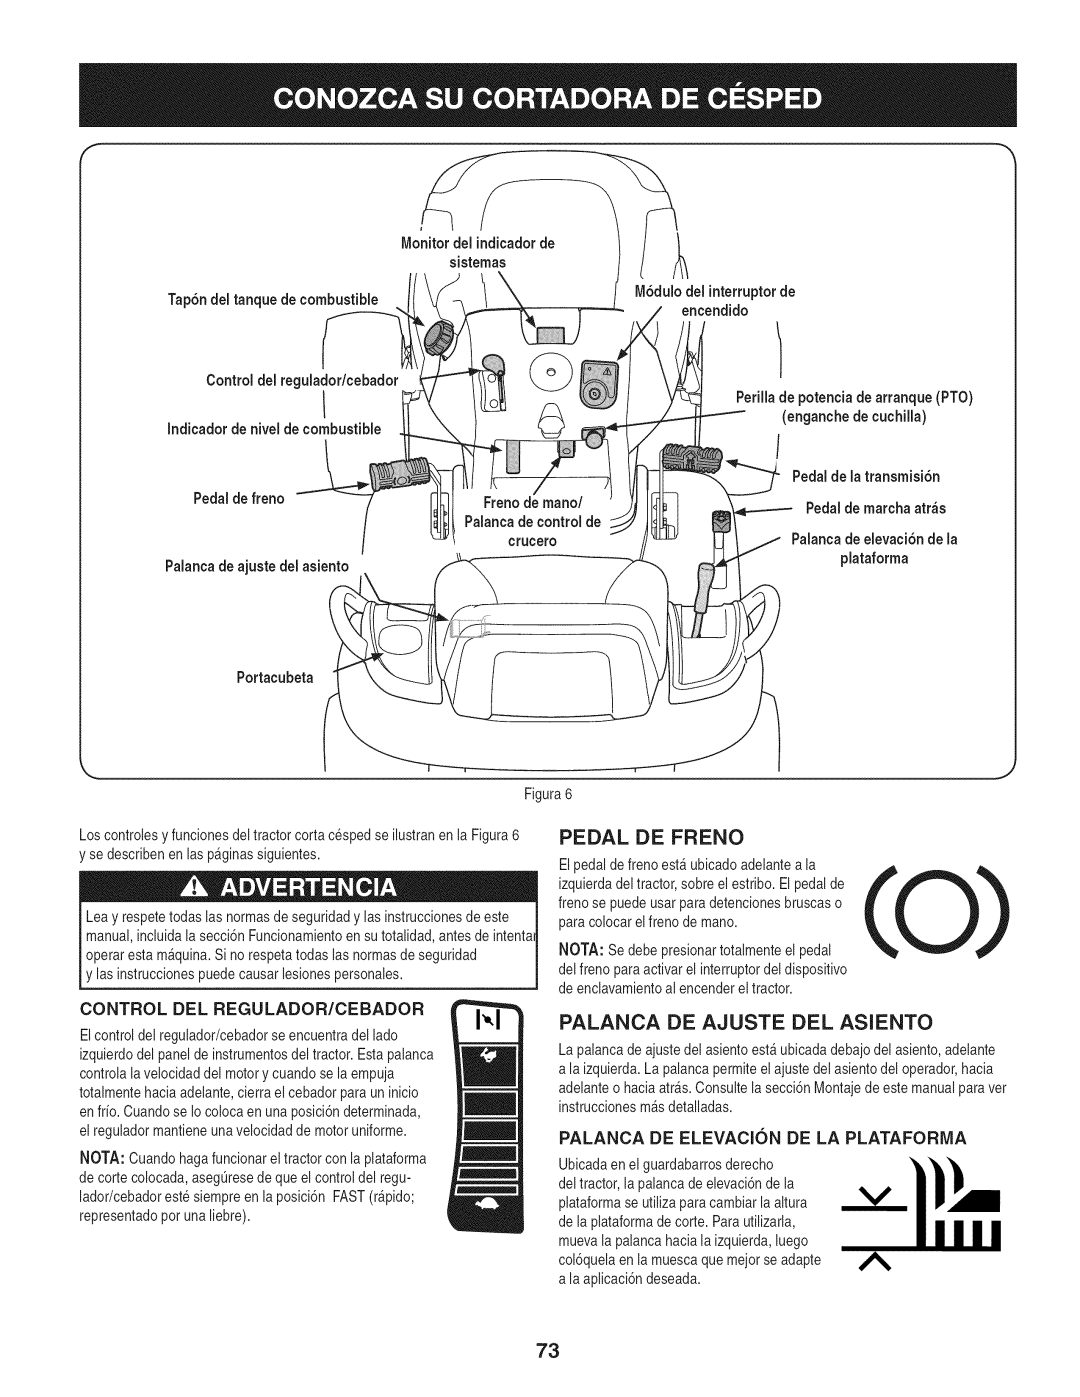 Craftsman 247.28672, PYT 9000 manual Pedal De Freno, Palanca De Ajuste Del Asiento 